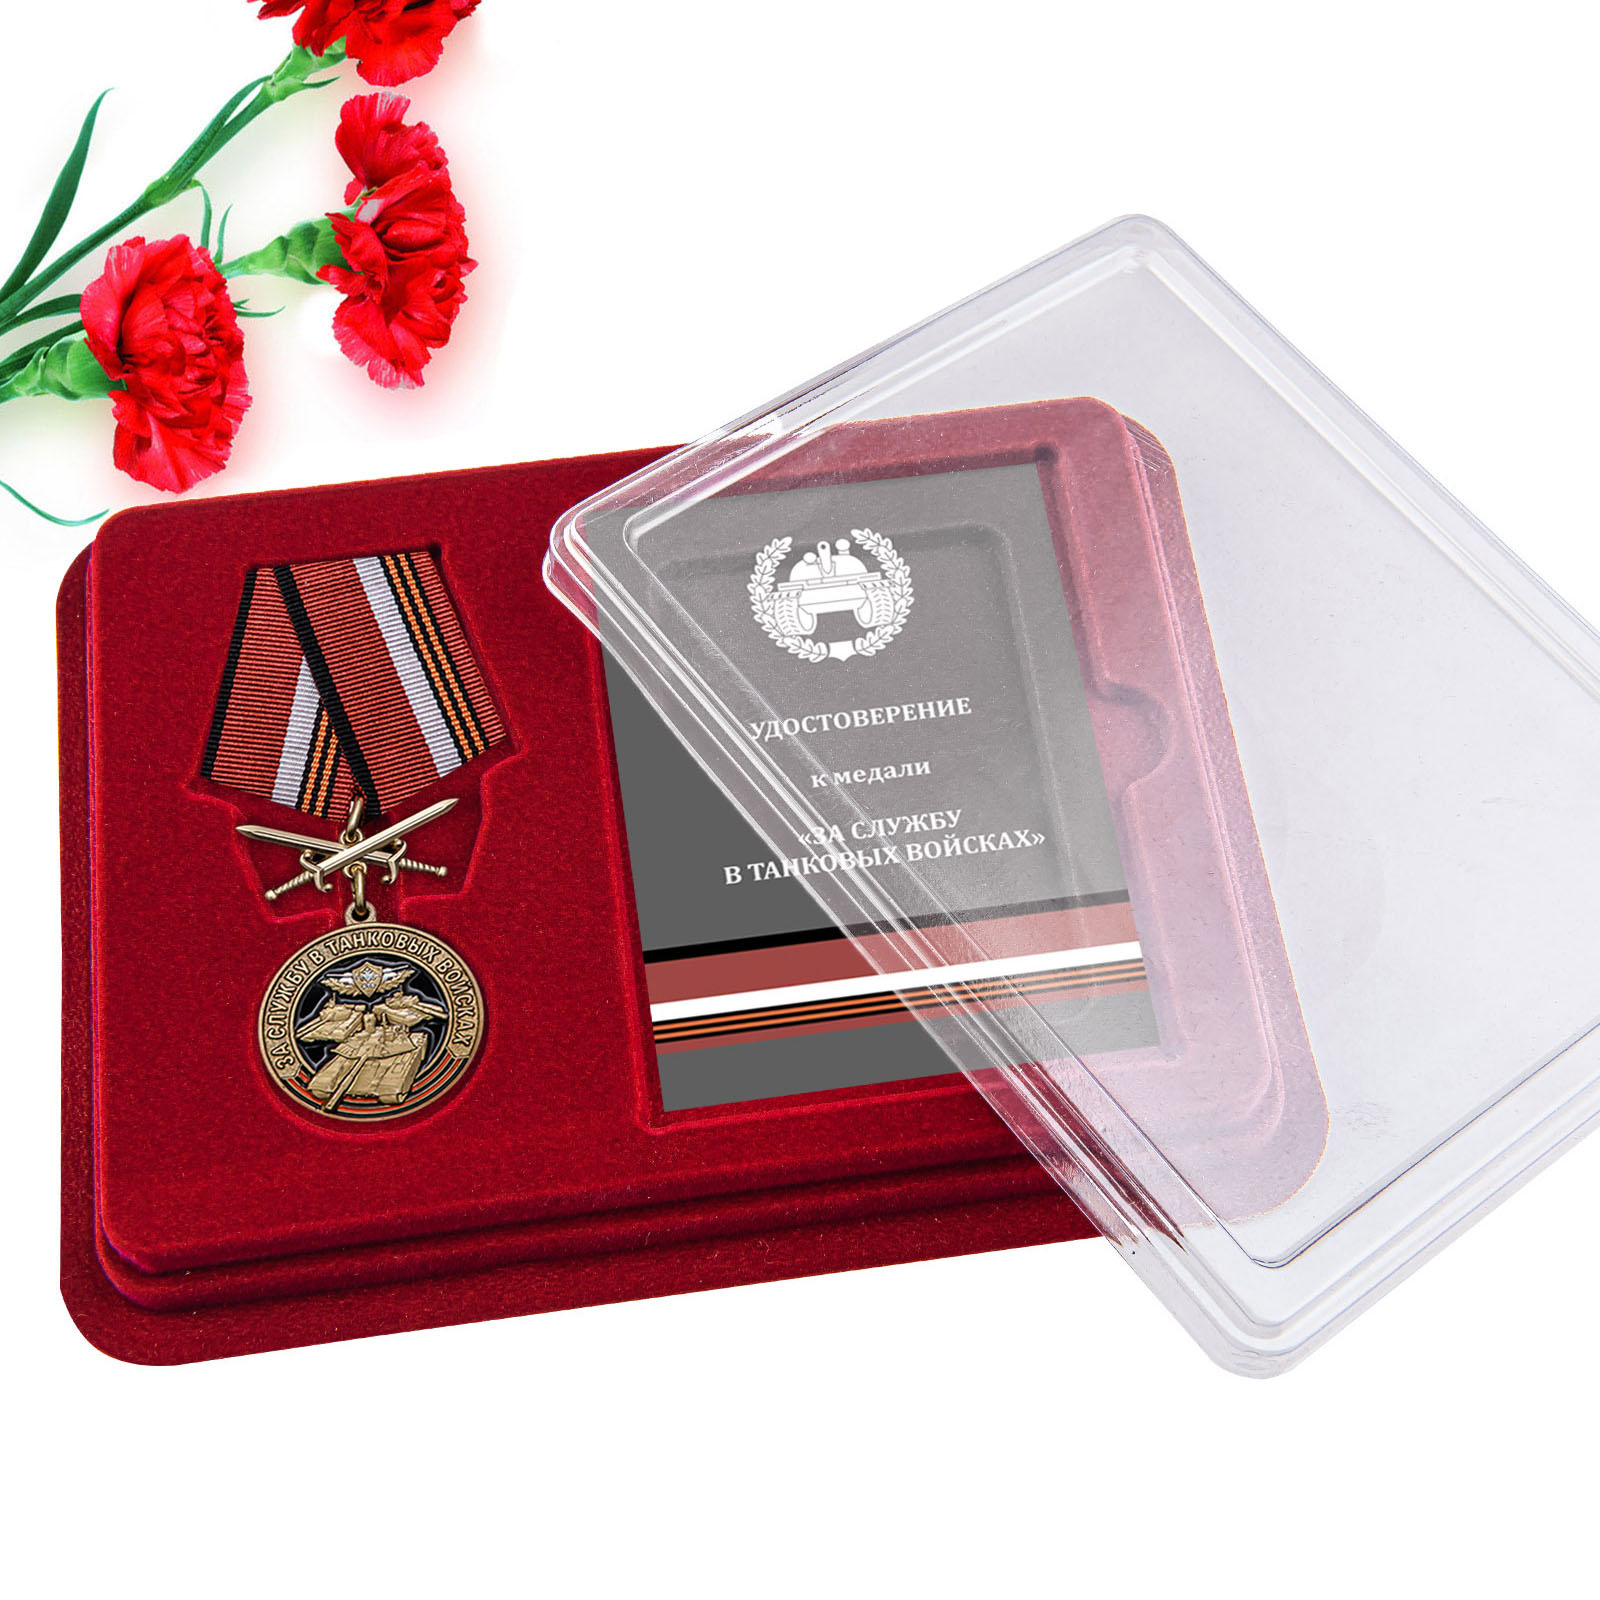 Купить медаль За службу в Танковых войсках по экономичной цене